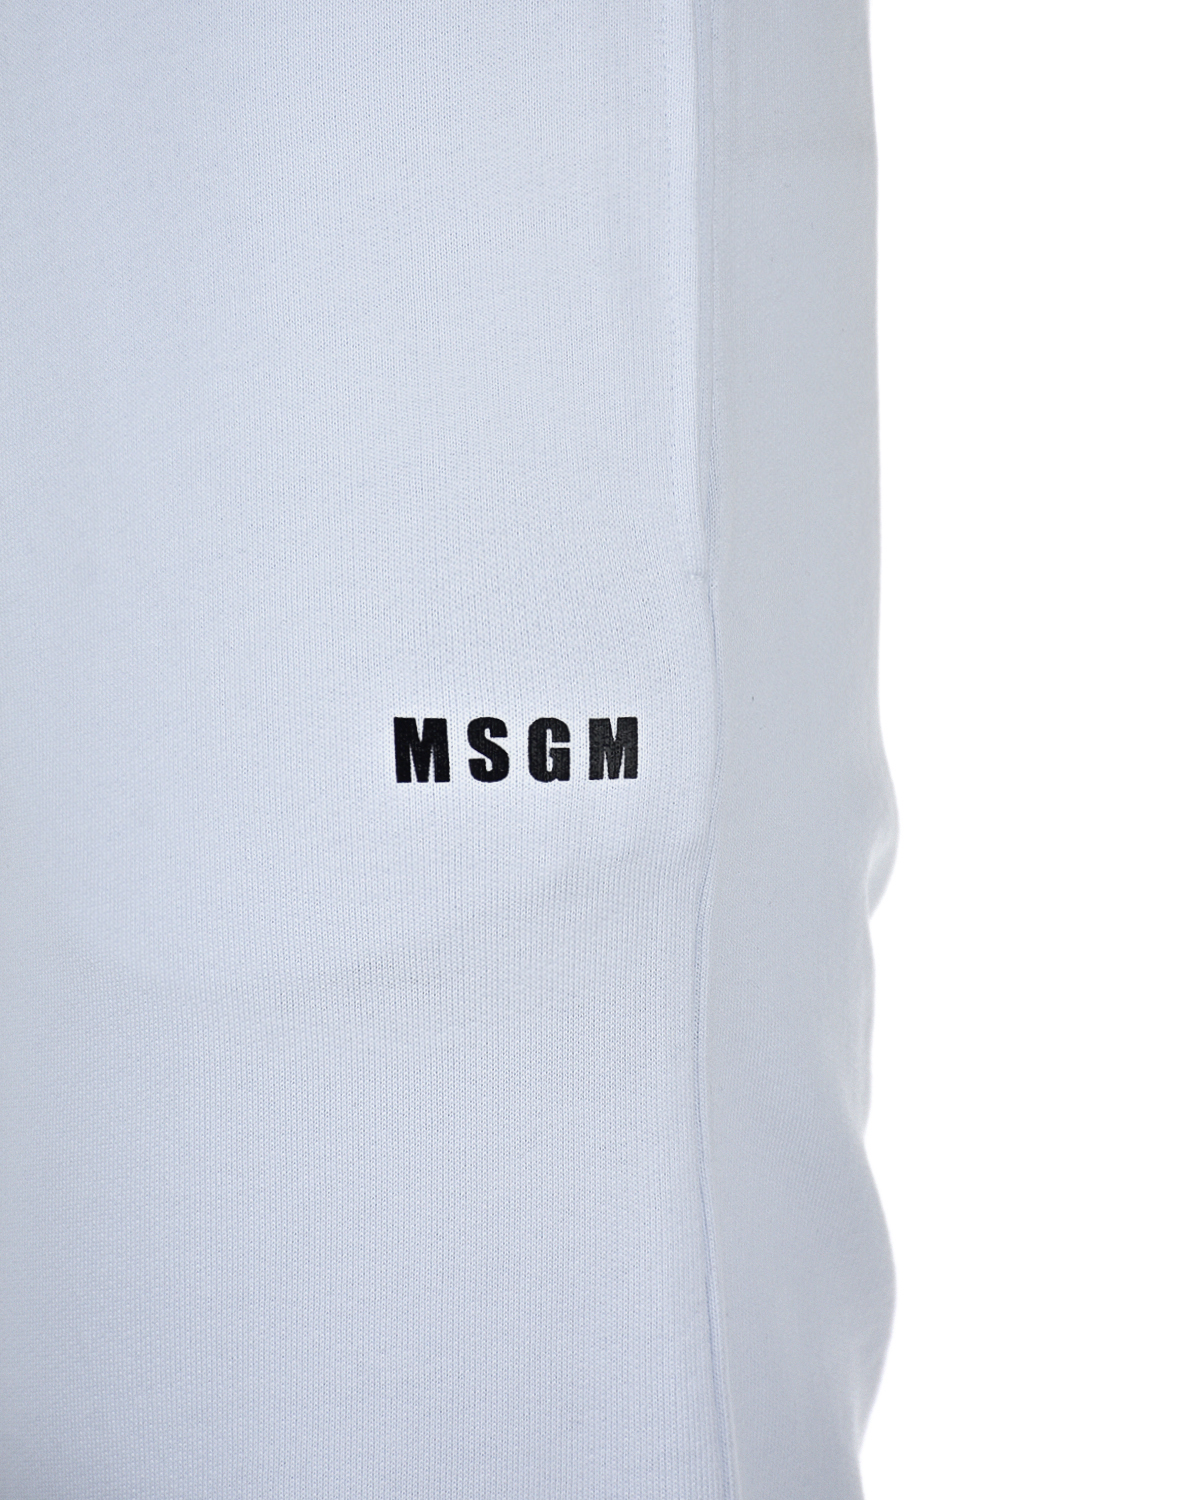 Спортивные брюки на резинке MSGM, размер 38, цвет белый - фото 6